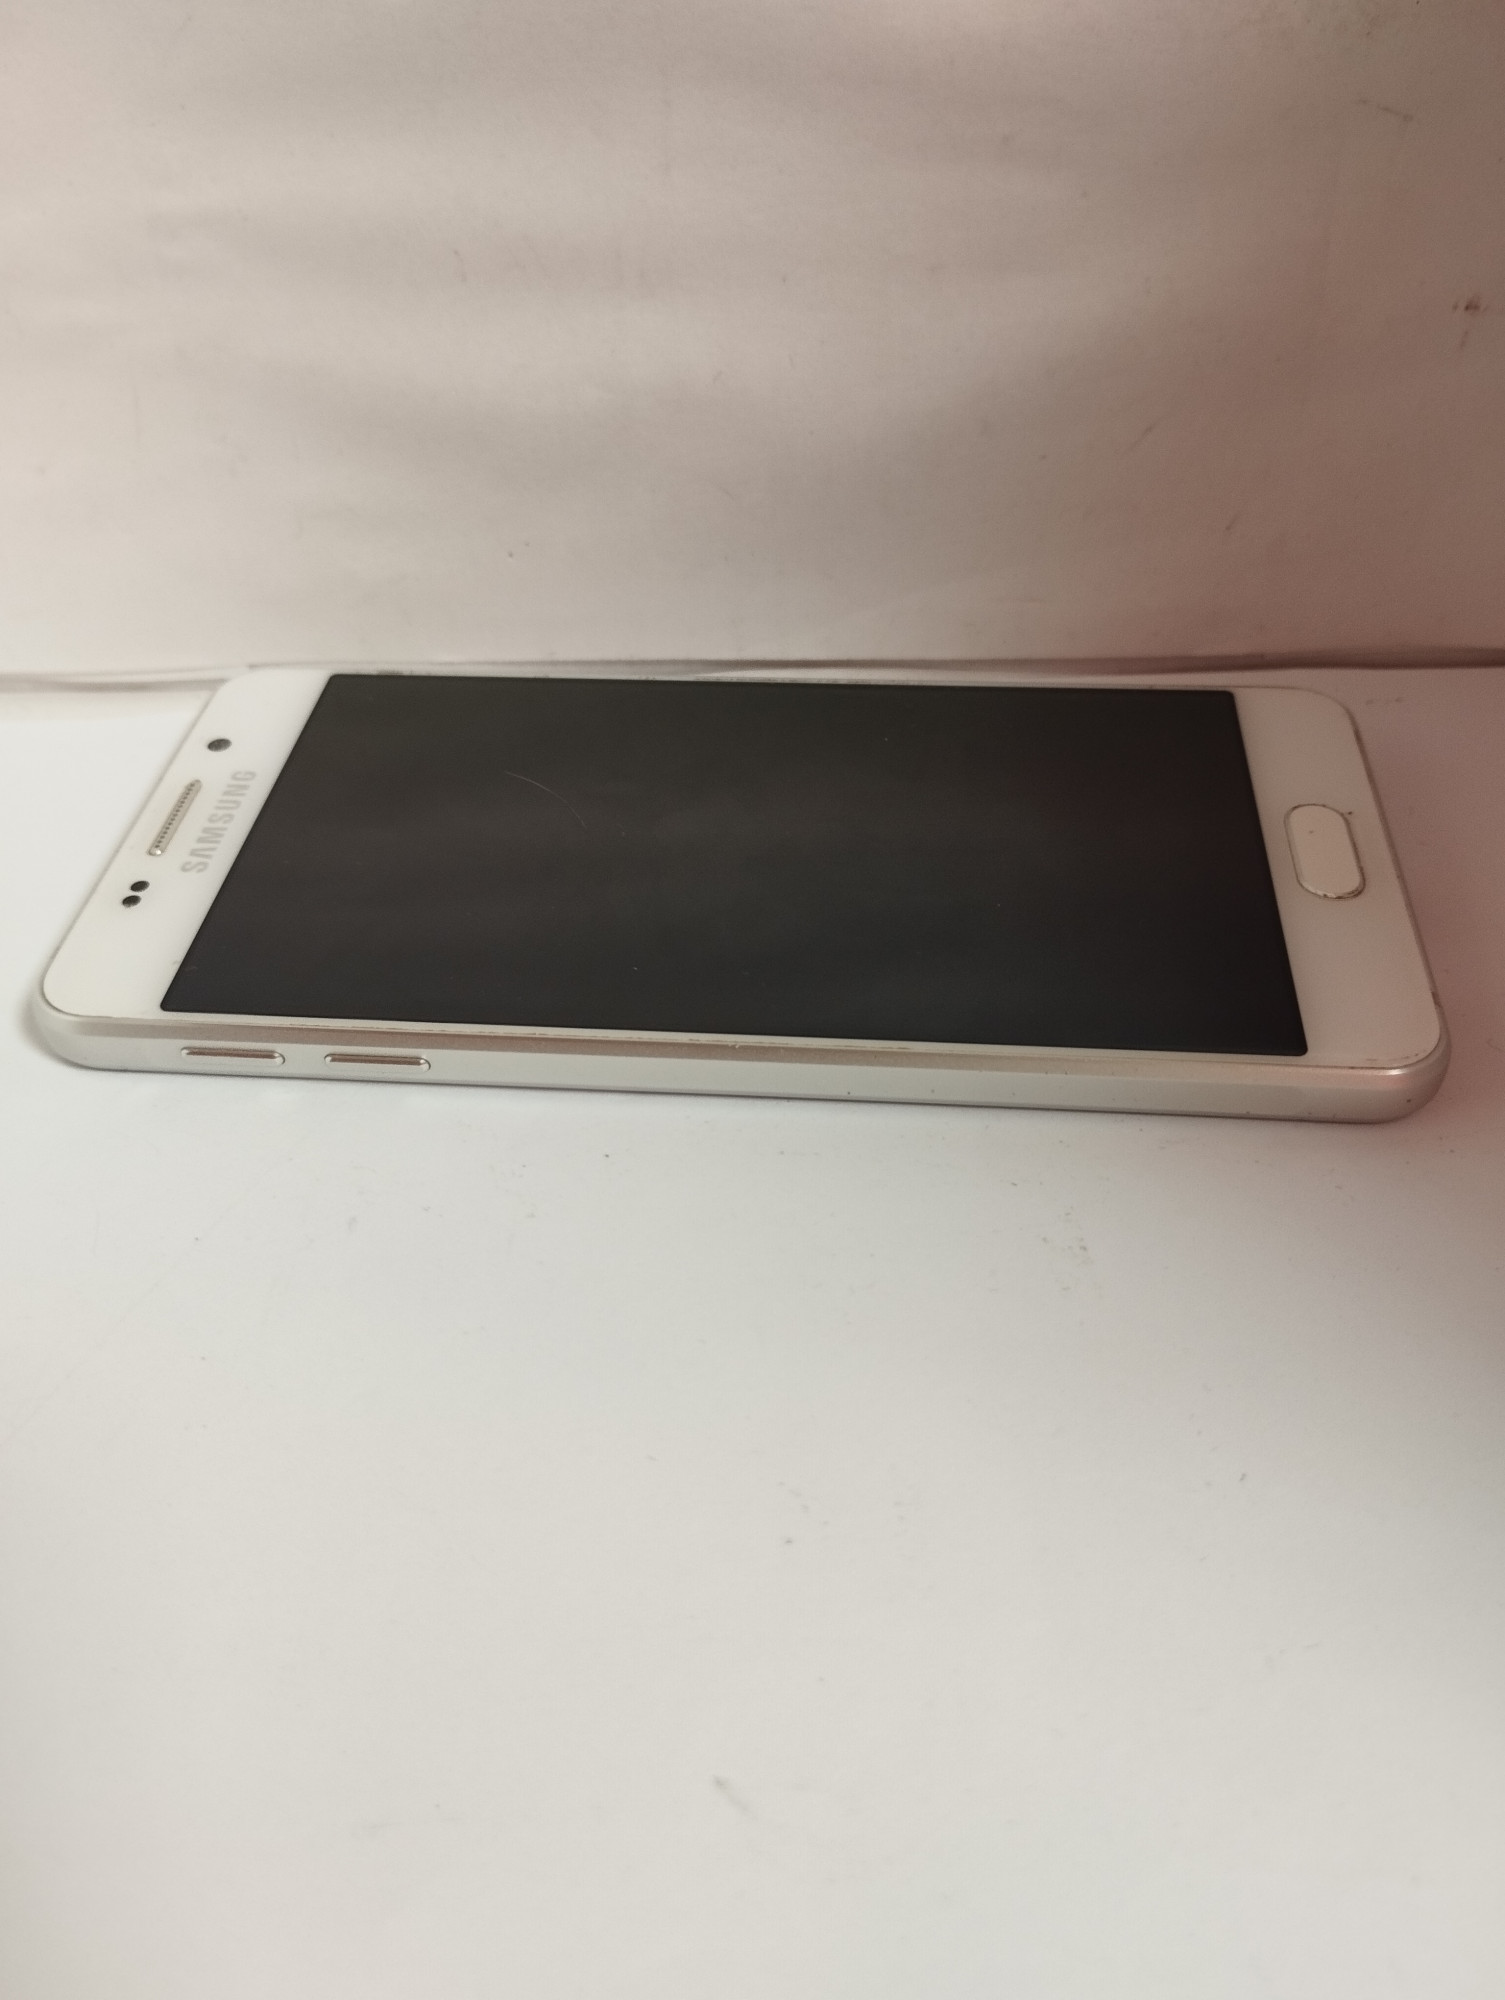 Samsung Galaxy A3 (SM-A310F) 2016 1/16Gb 3